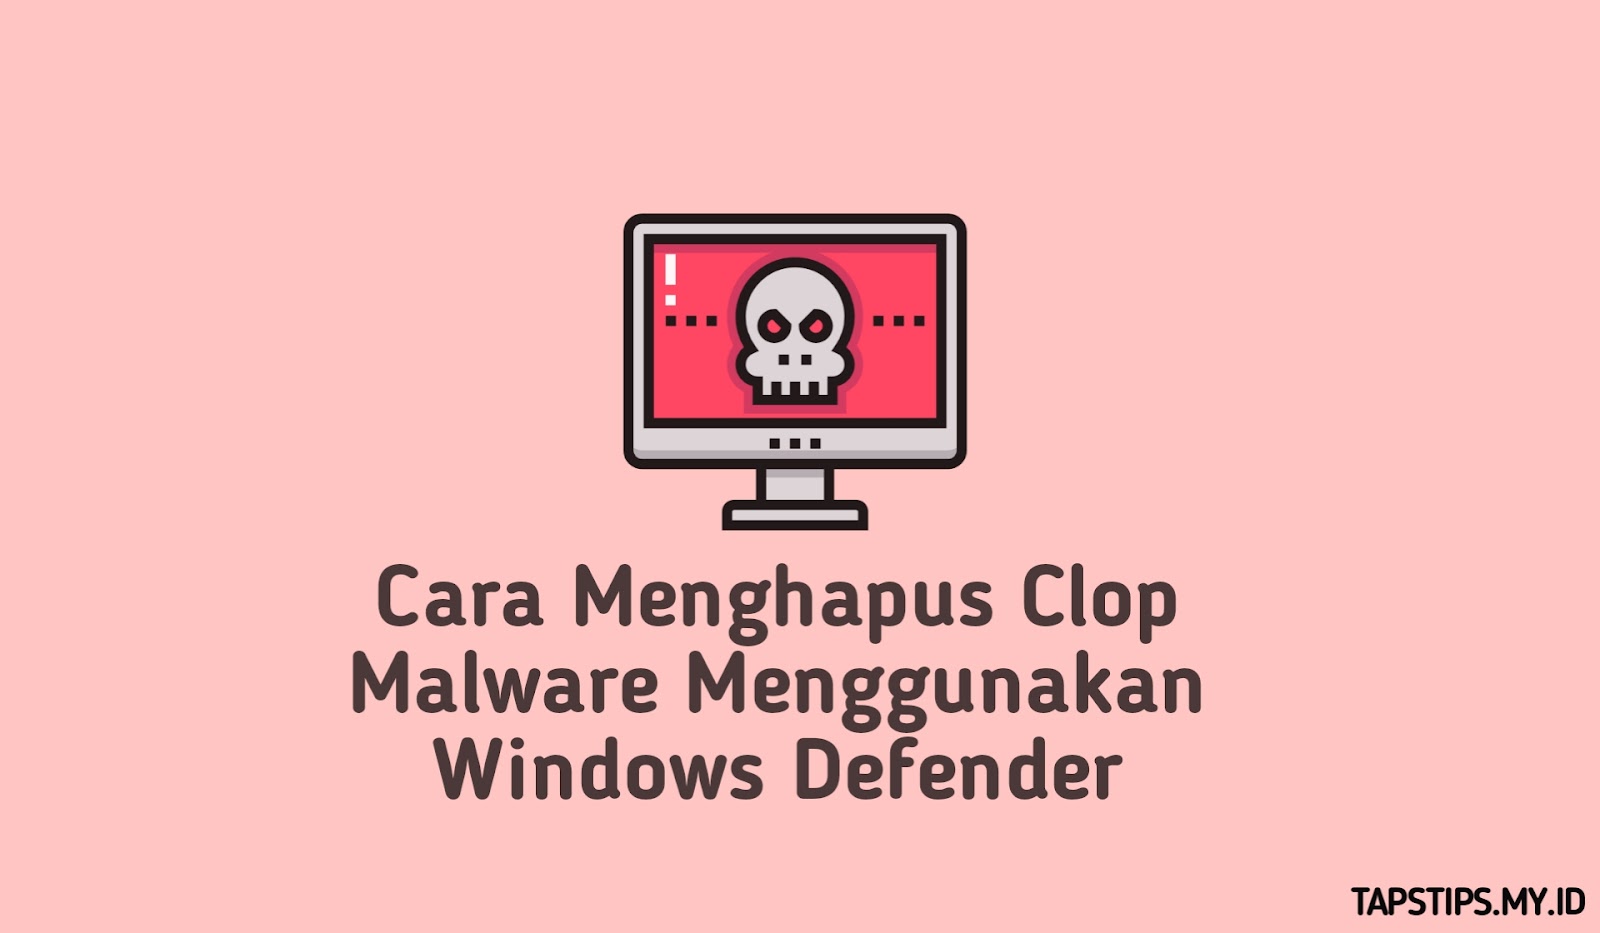 Cara Menghapus Clop Malware Menggunakan Windows Defender